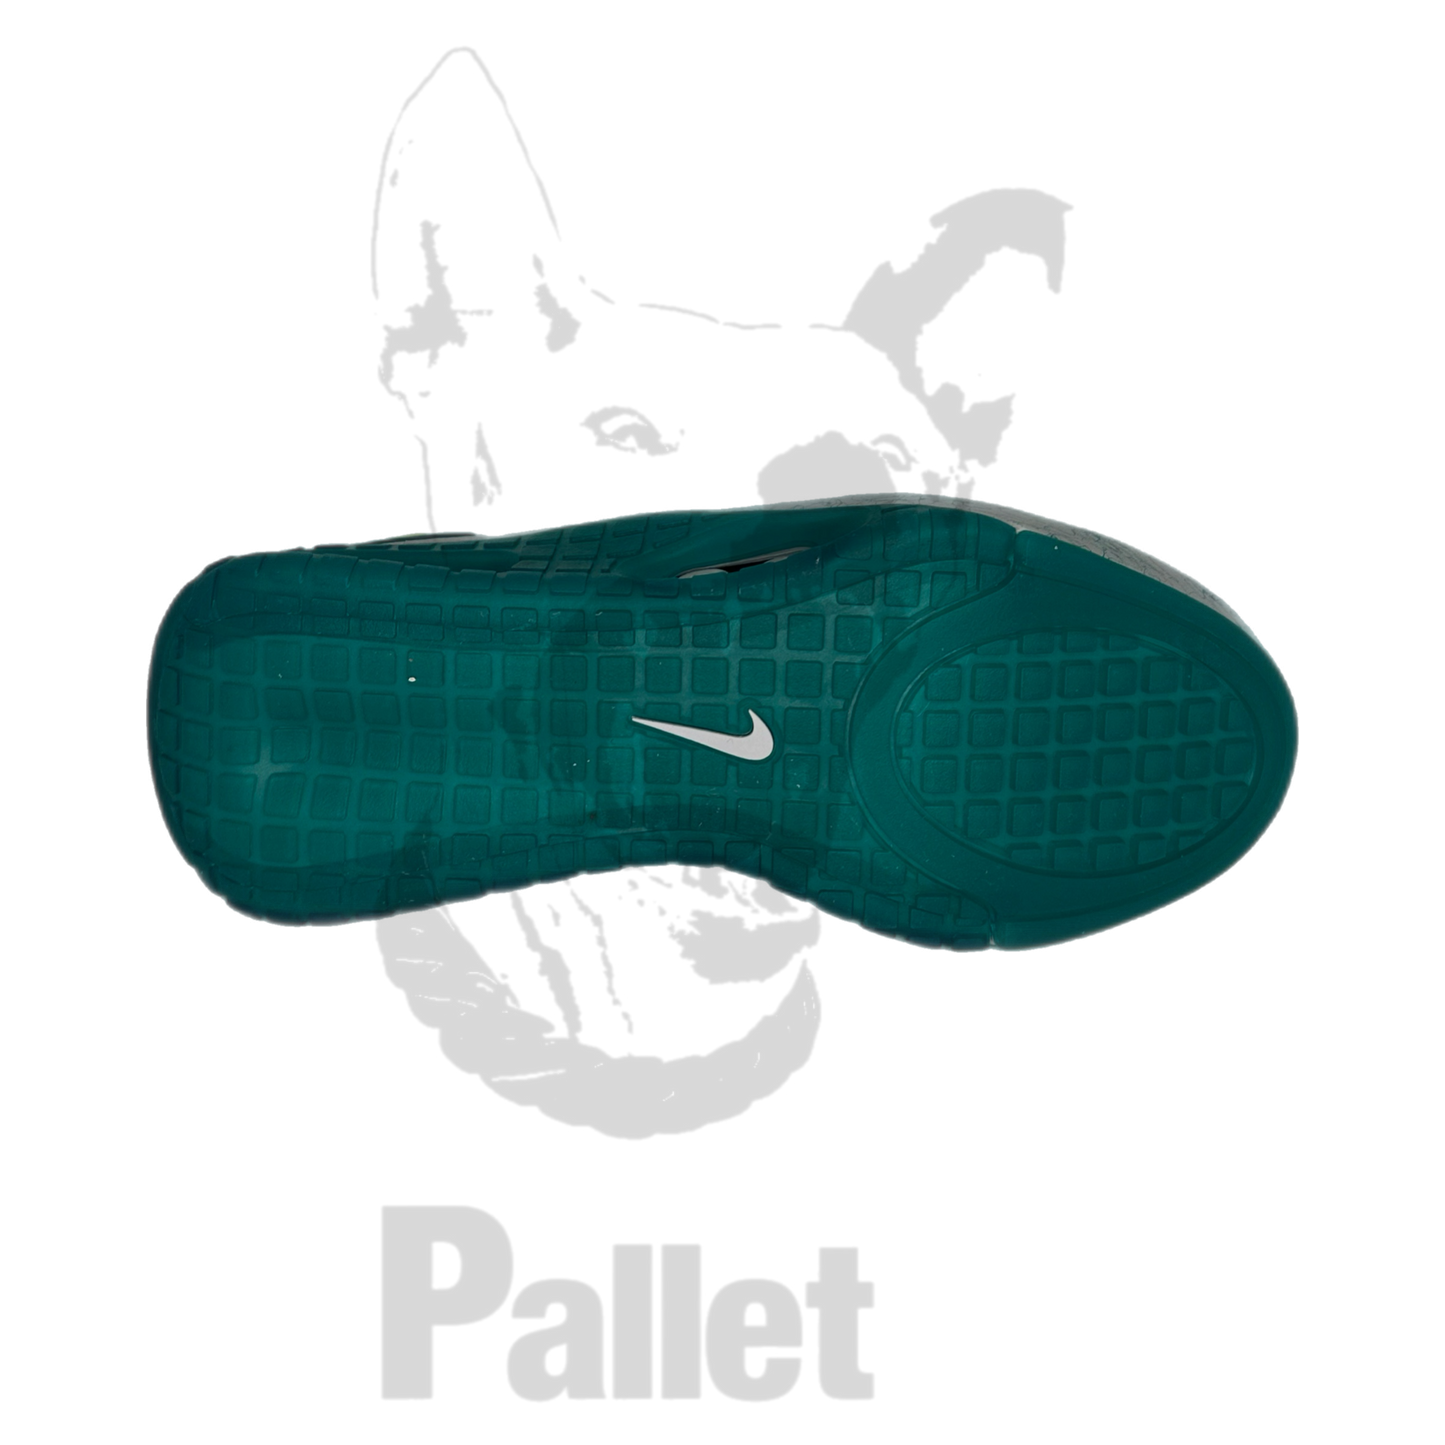 Nike -" Adapt Automax "- Size 5